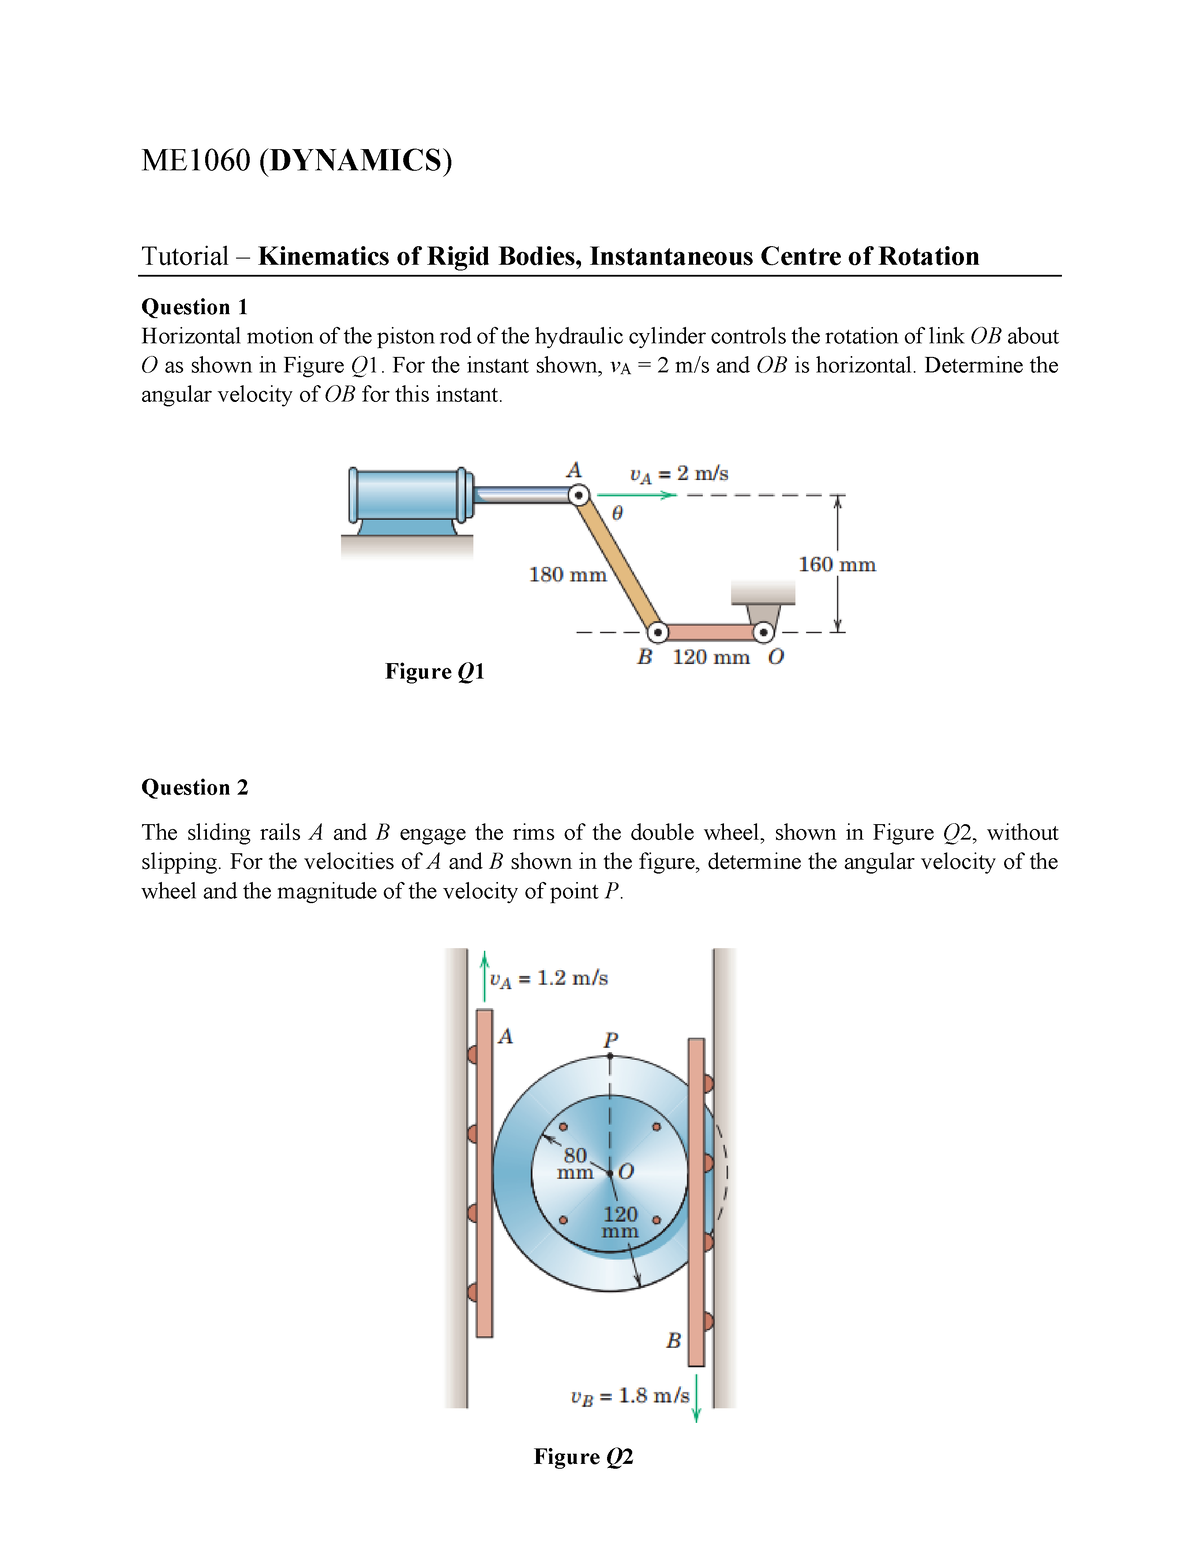 Tutorial kiematics of rigid bodies inst centre - ME10 60 